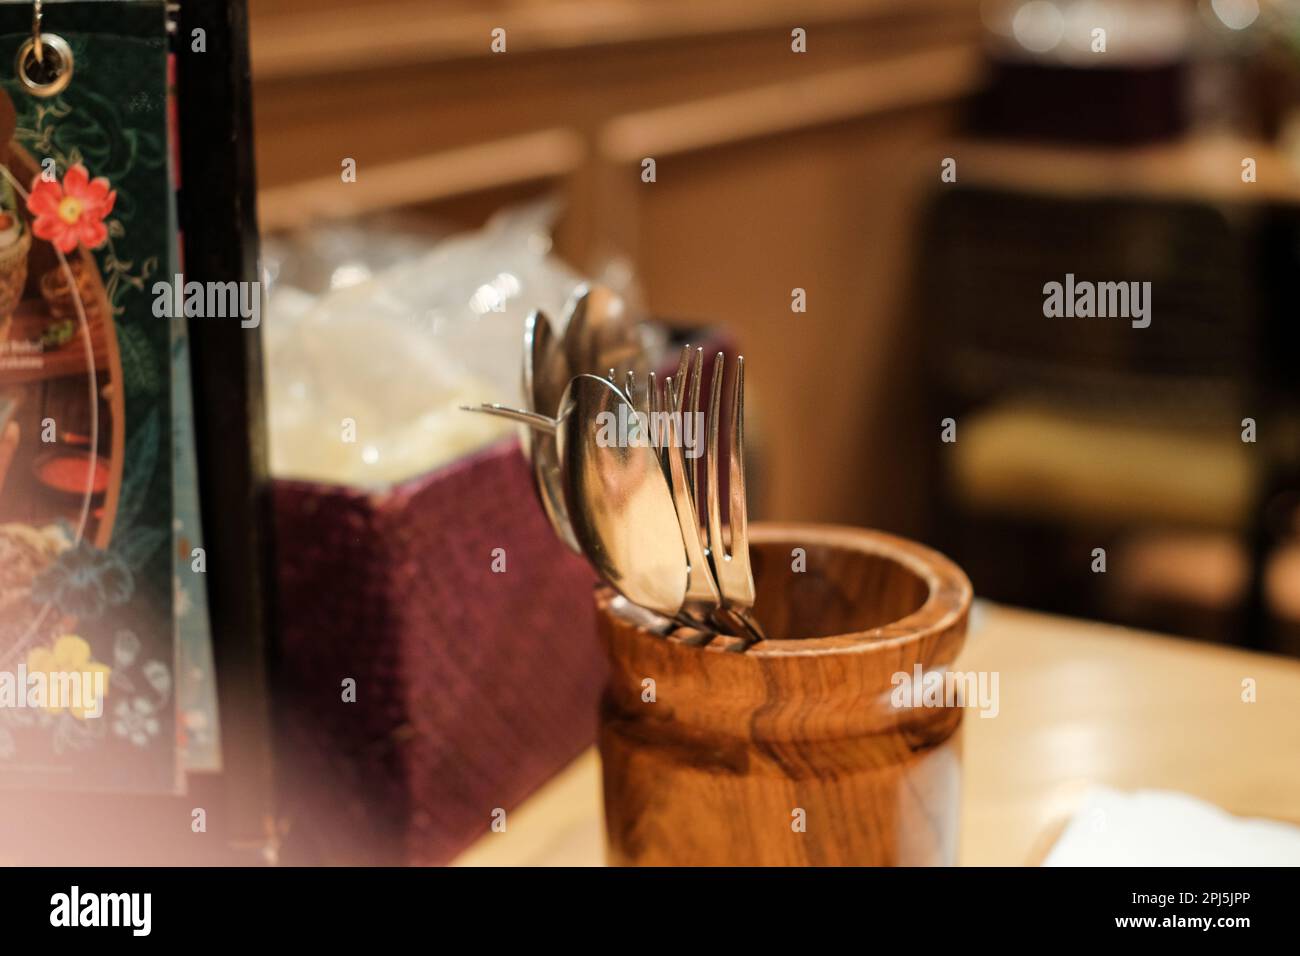 Elegante cubertería de madera con tenedores y cucharas. en una mesa en un restaurante de lujo con luz incandescente. Look vintage y retro. Foto de stock